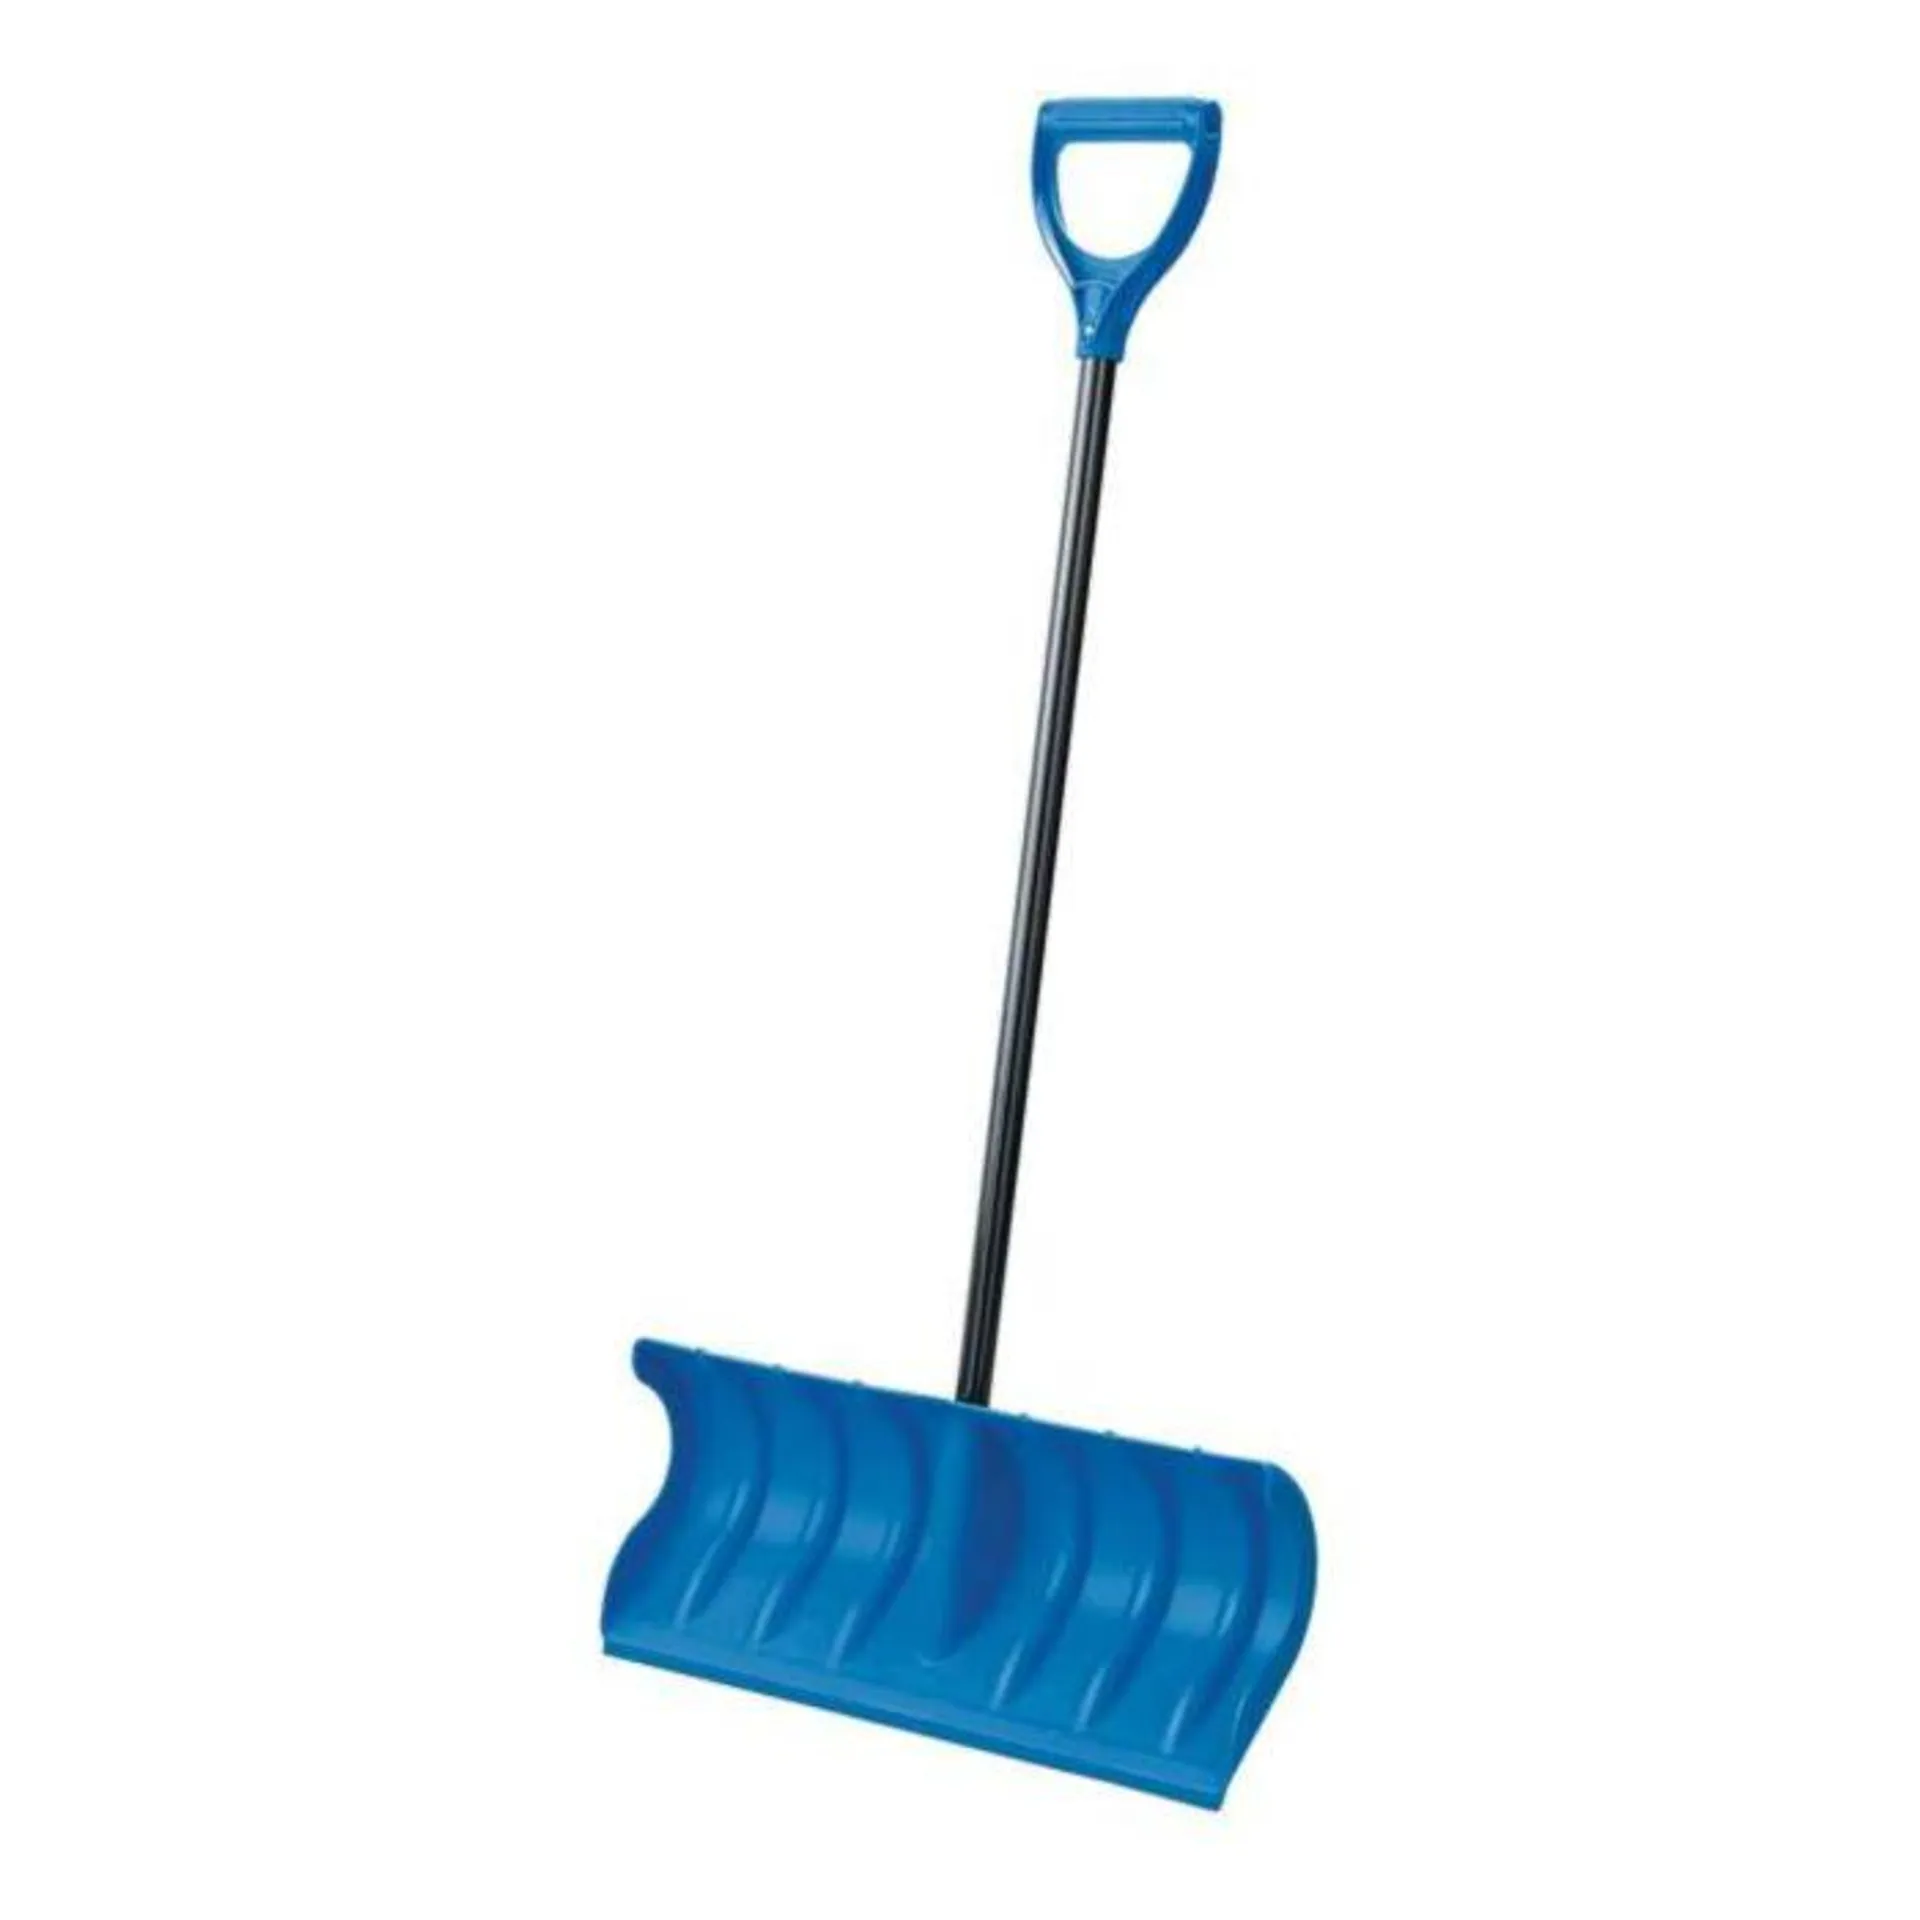 Orbit Plastic Edge Pusher Snow Shovel - Blue, 24 in